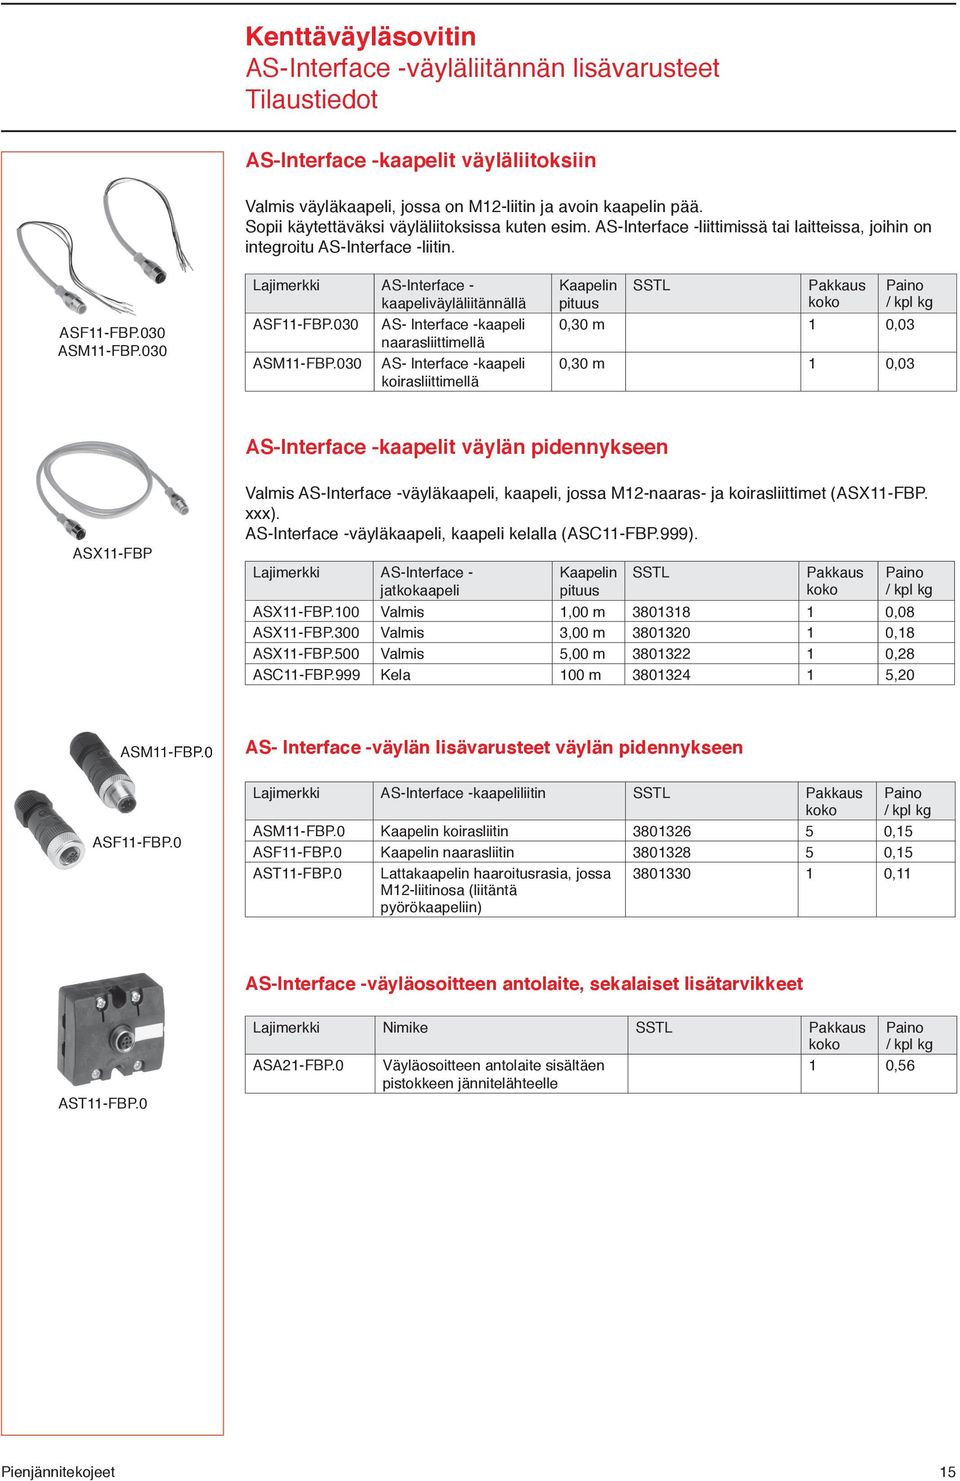 030 Lajimerkki AS-Interface - kaapeliväyläliitännällä ASF11-FBP.030 AS- Interface -kaapeli naarasliittimellä ASM11-FBP.